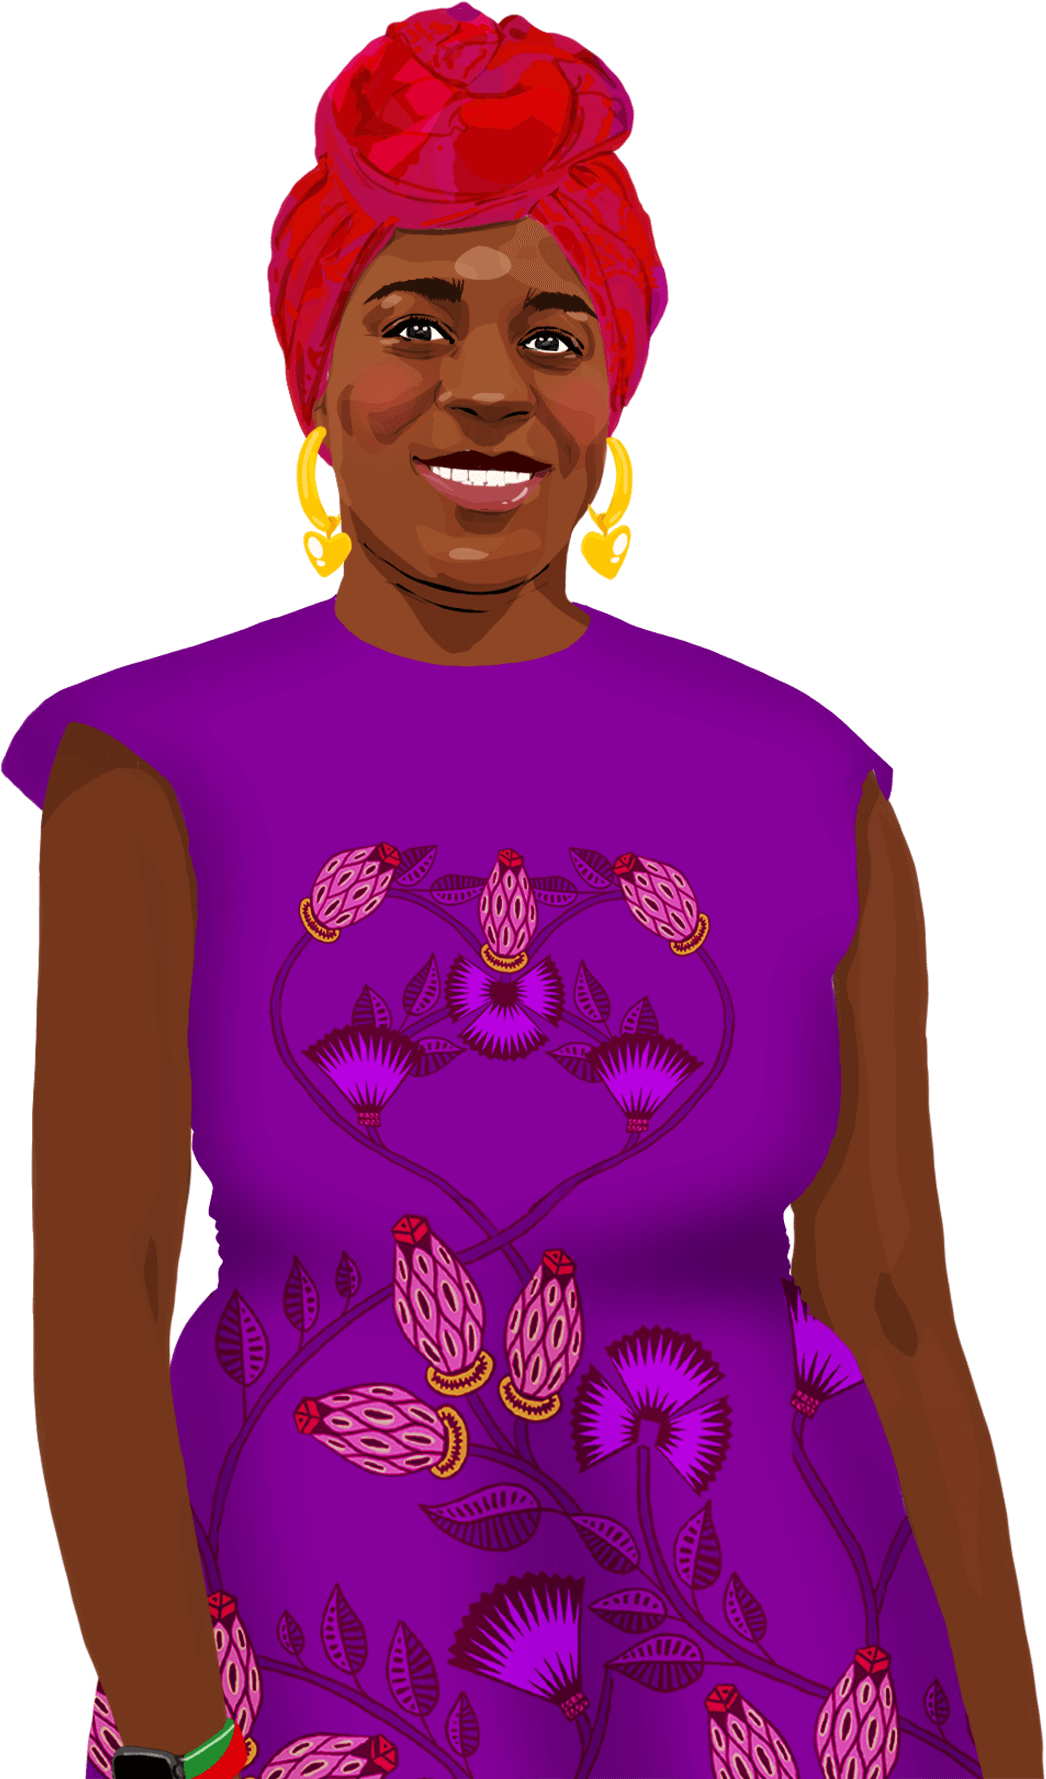 Ilustrovaný portrét Cynthie, která se usmívá a dívá na čtenáře.